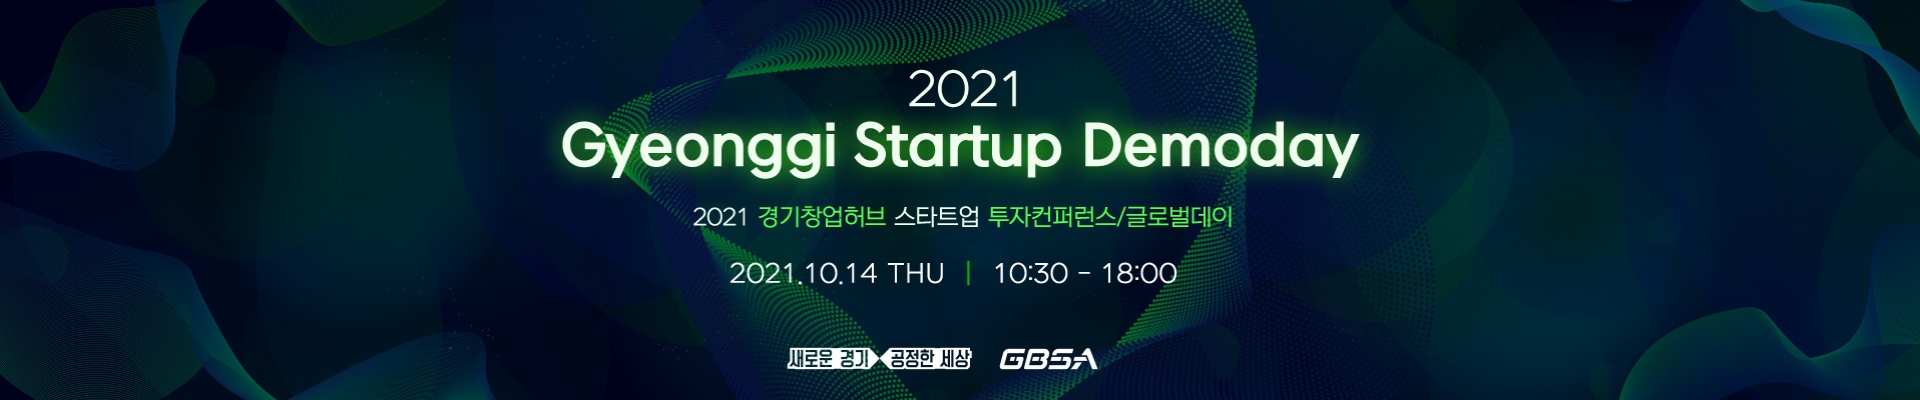 2021 경기 스타트업 데모데이(Gyeonggi Startup Demoday)